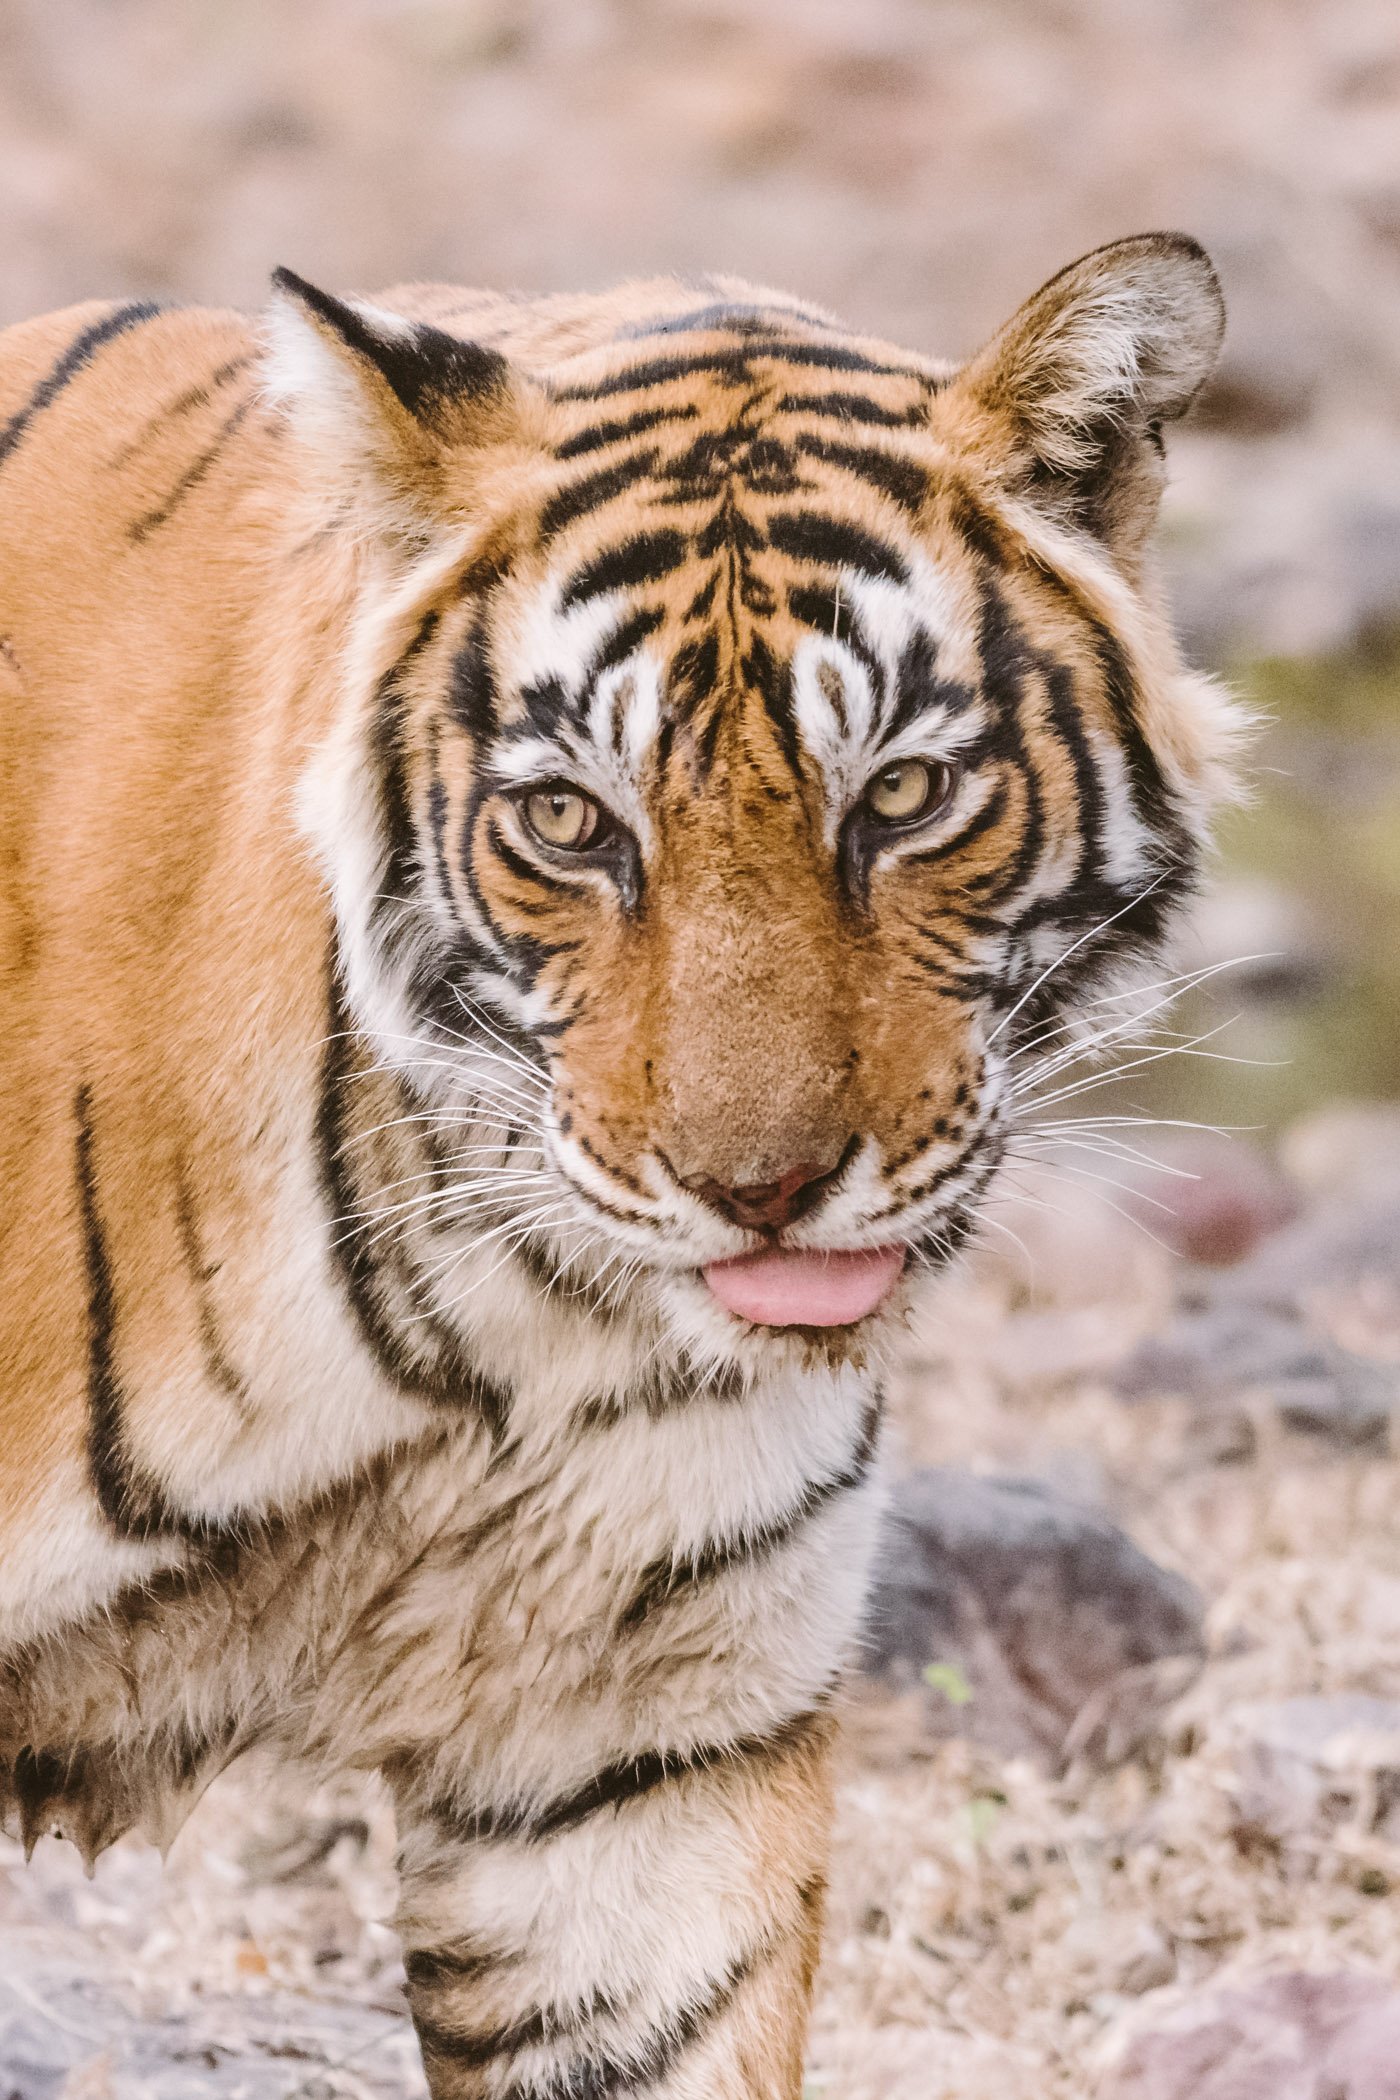 Tiger Safari in Rajasthan